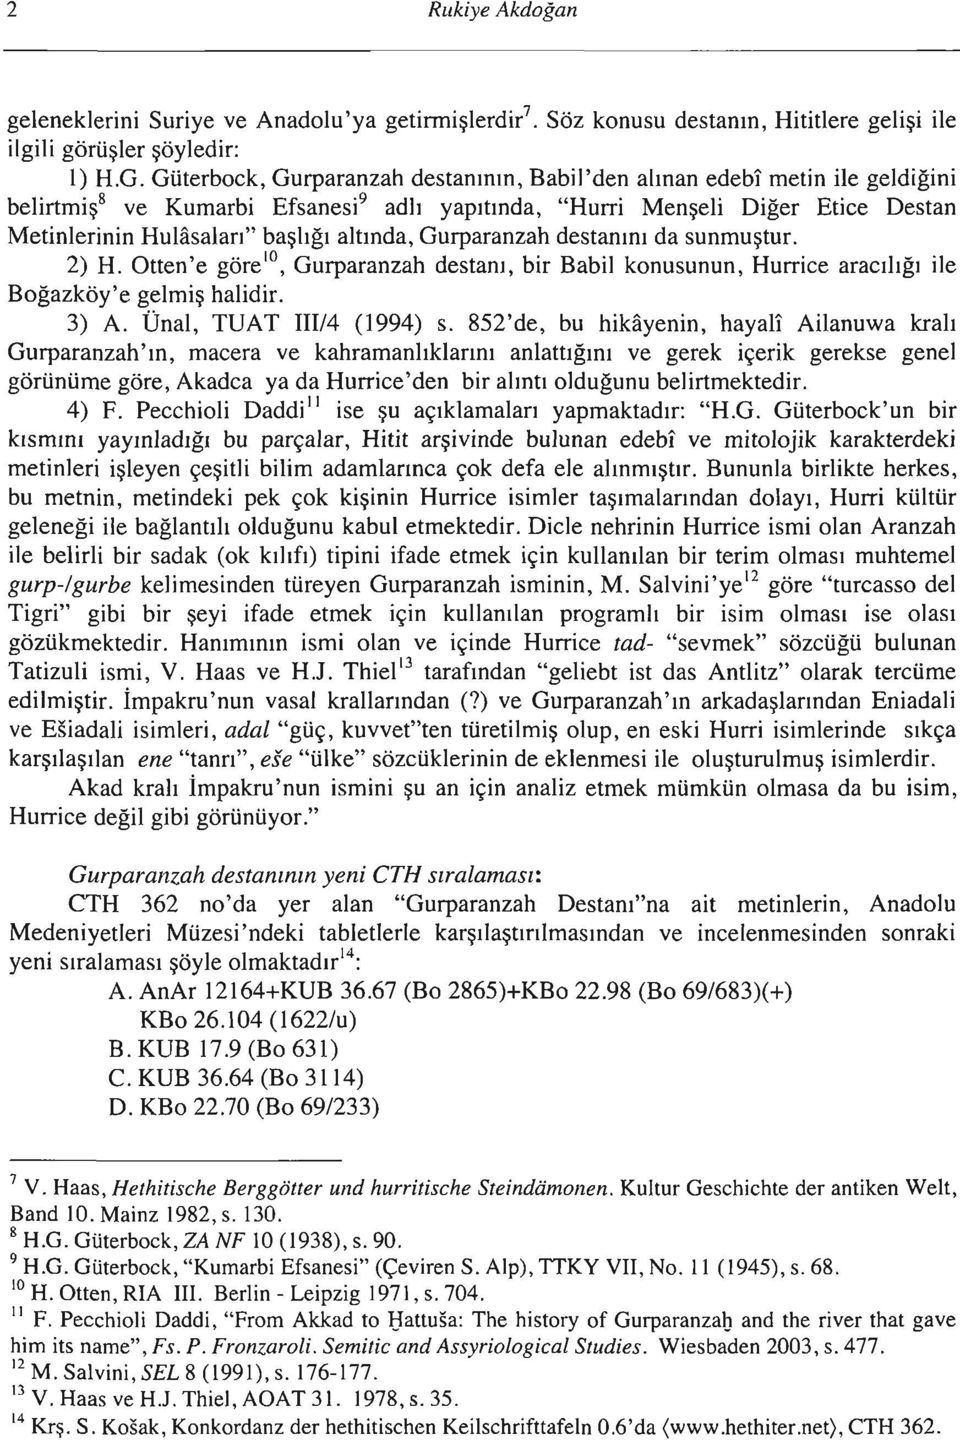 altında, Gurparanzah destanını da sunmuştur. 2) H. Otten'e göre IO, Gurparanzah destanı, bir Babil konusunun, Hurrice aracılığı ile Boğazköy'e gelmiş halidir. 3) A. Ünal, TUAT III/4 (1994) s.